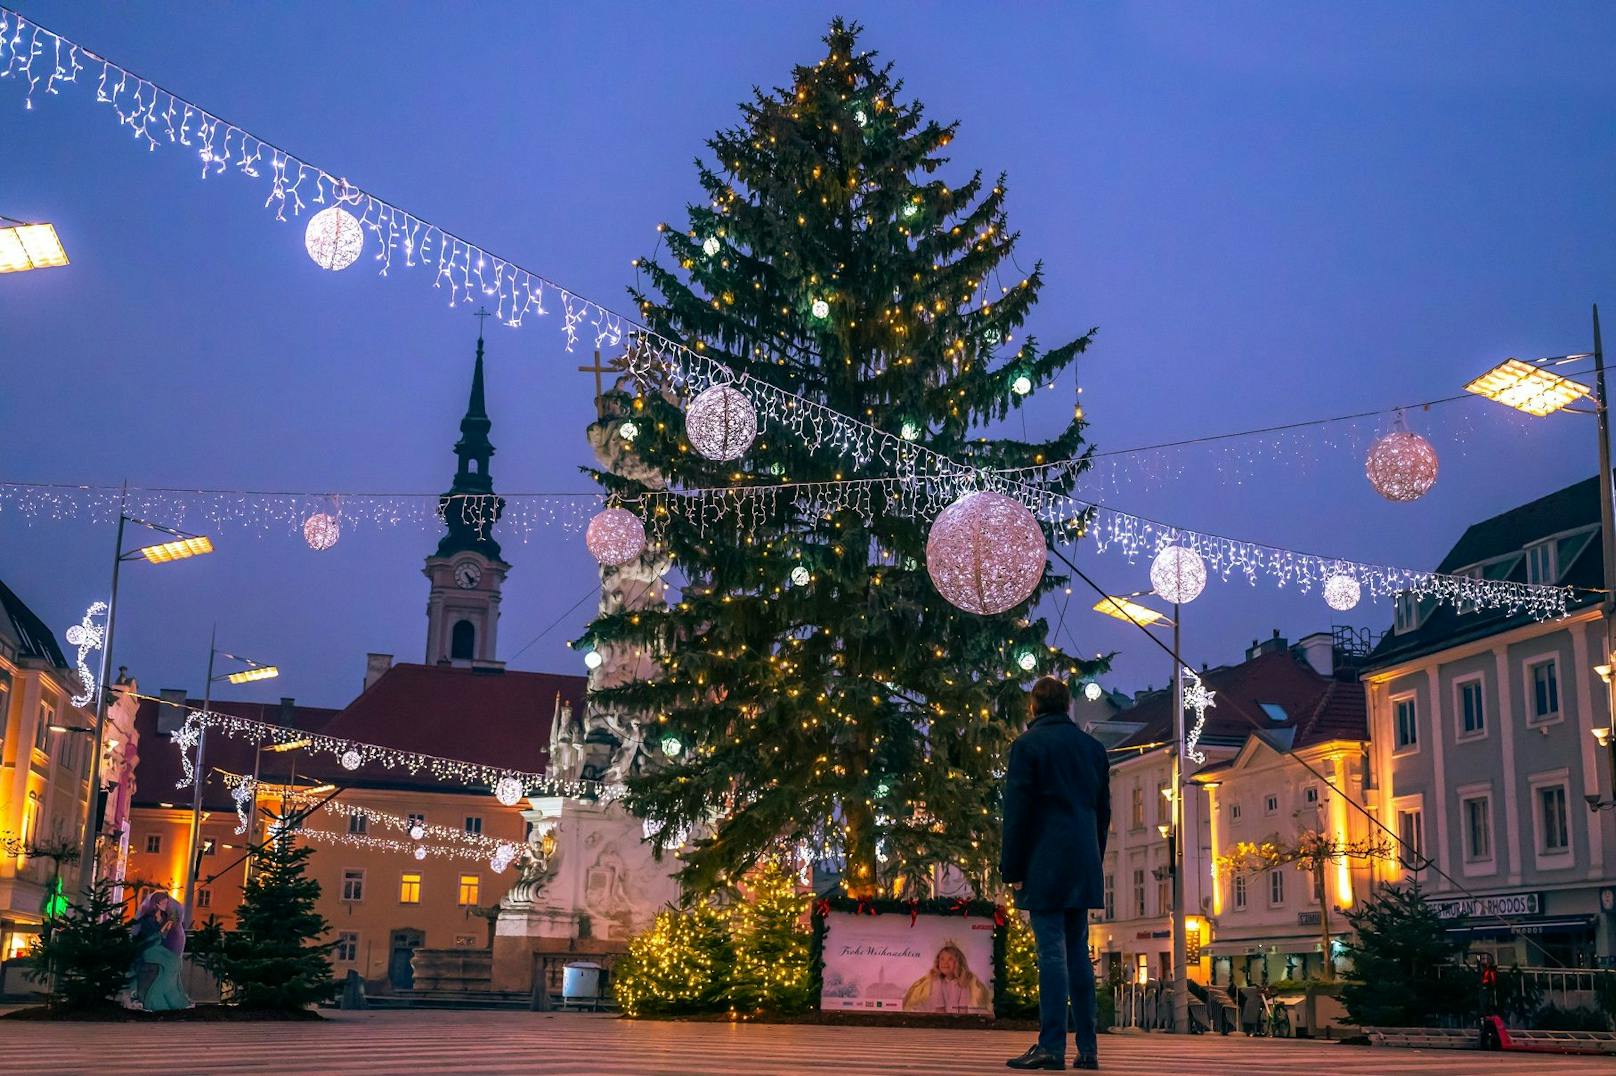 Weihnachts- bzw. Winterschmuck in St. Pölten